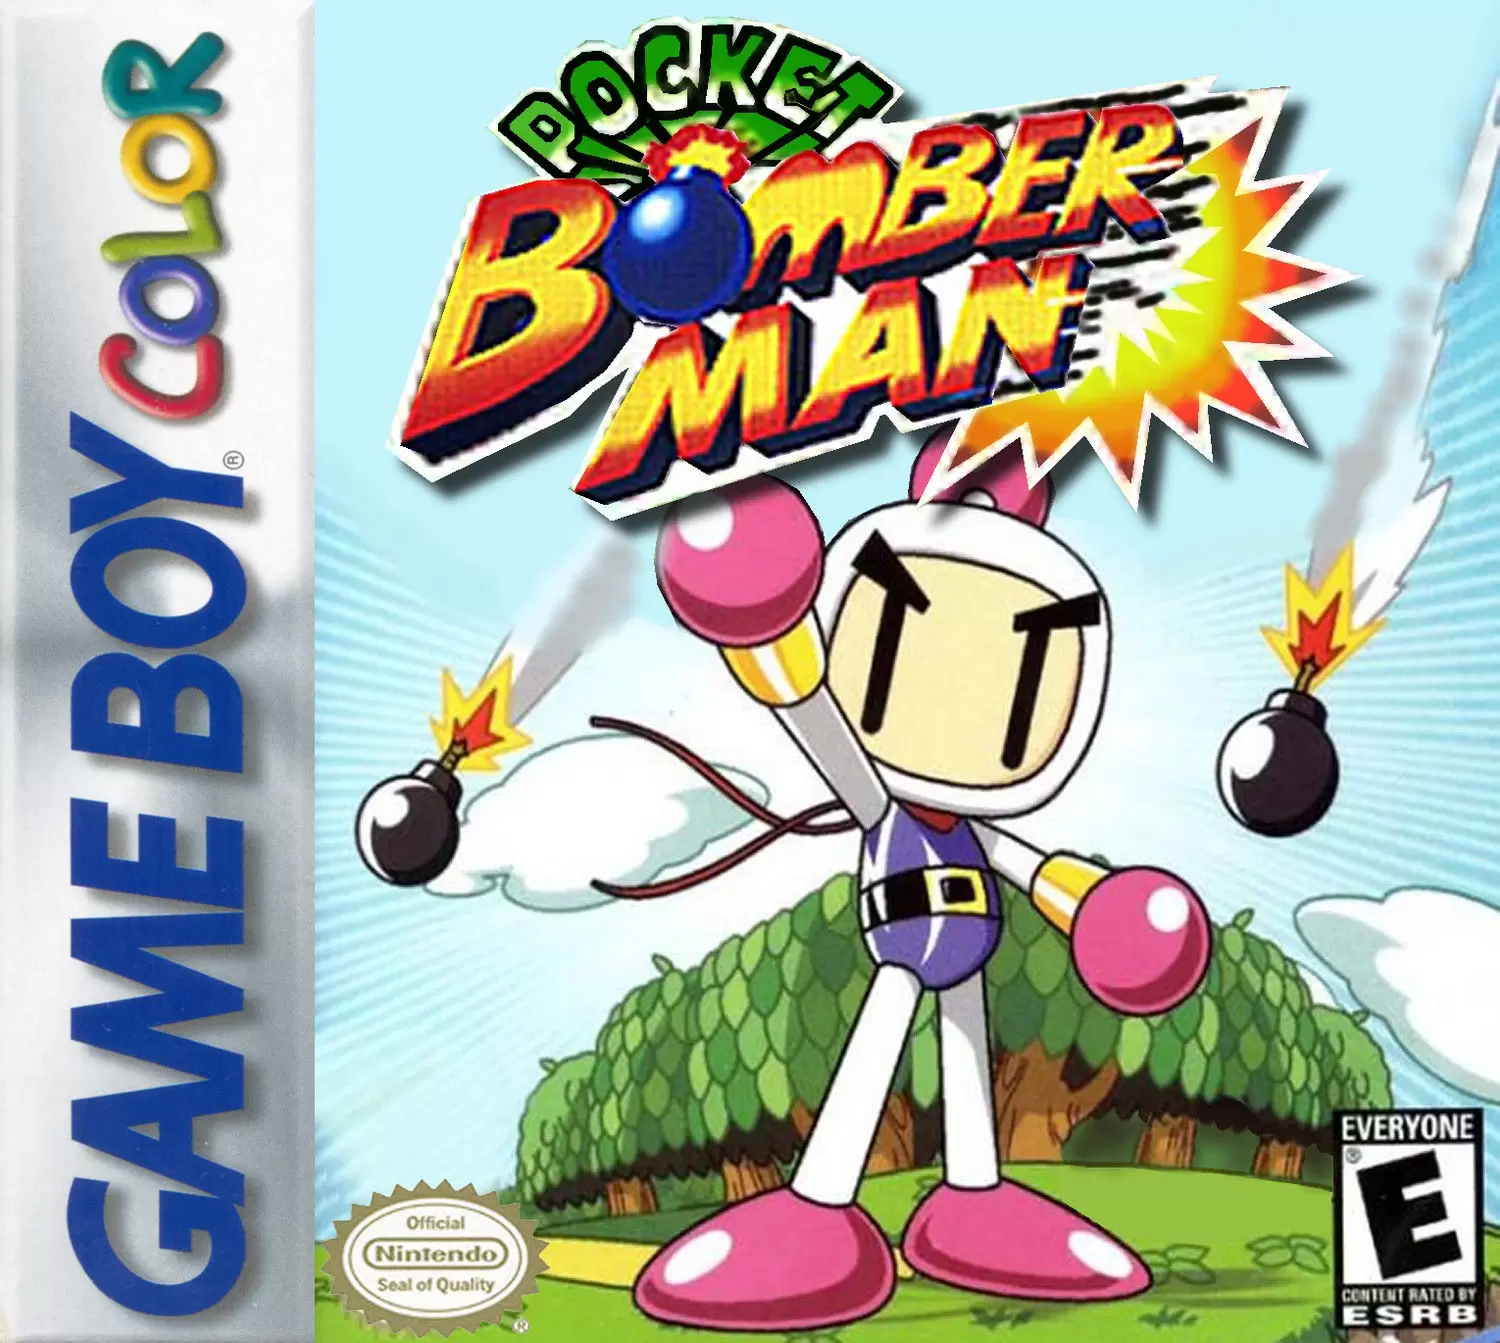 Game Boy Color Games - Pocket Bomberman